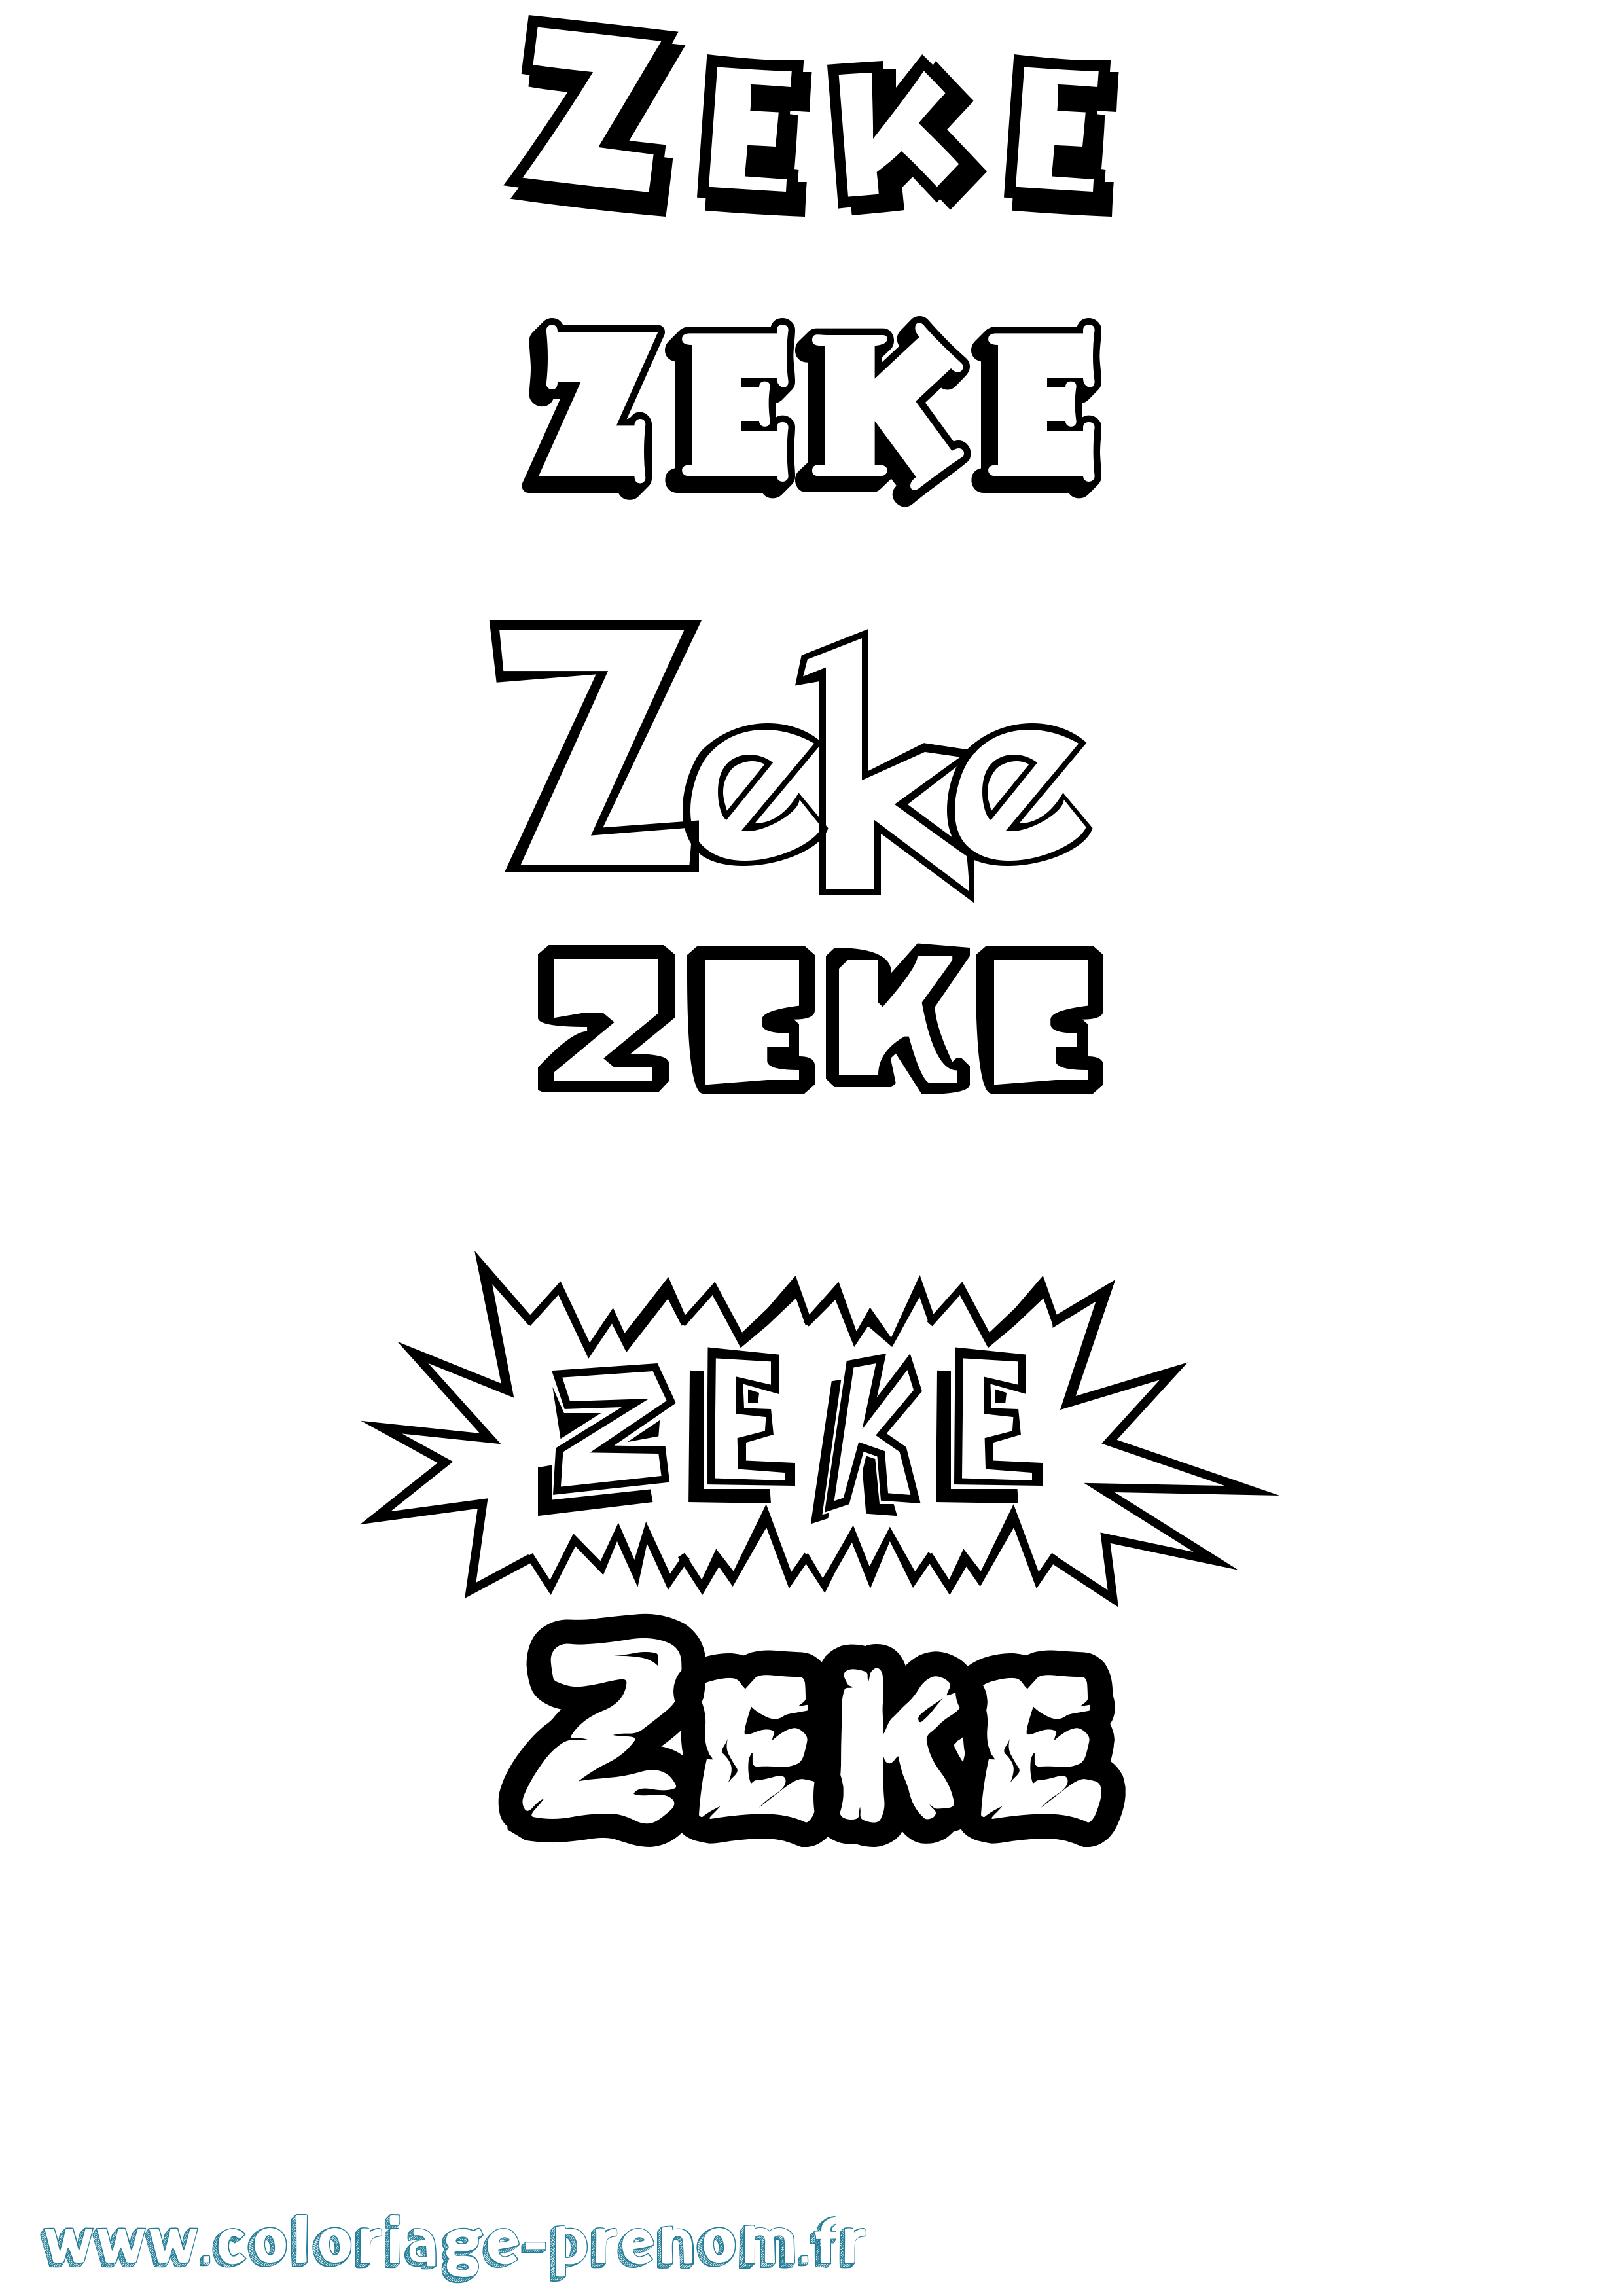 Coloriage prénom Zeke Dessin Animé